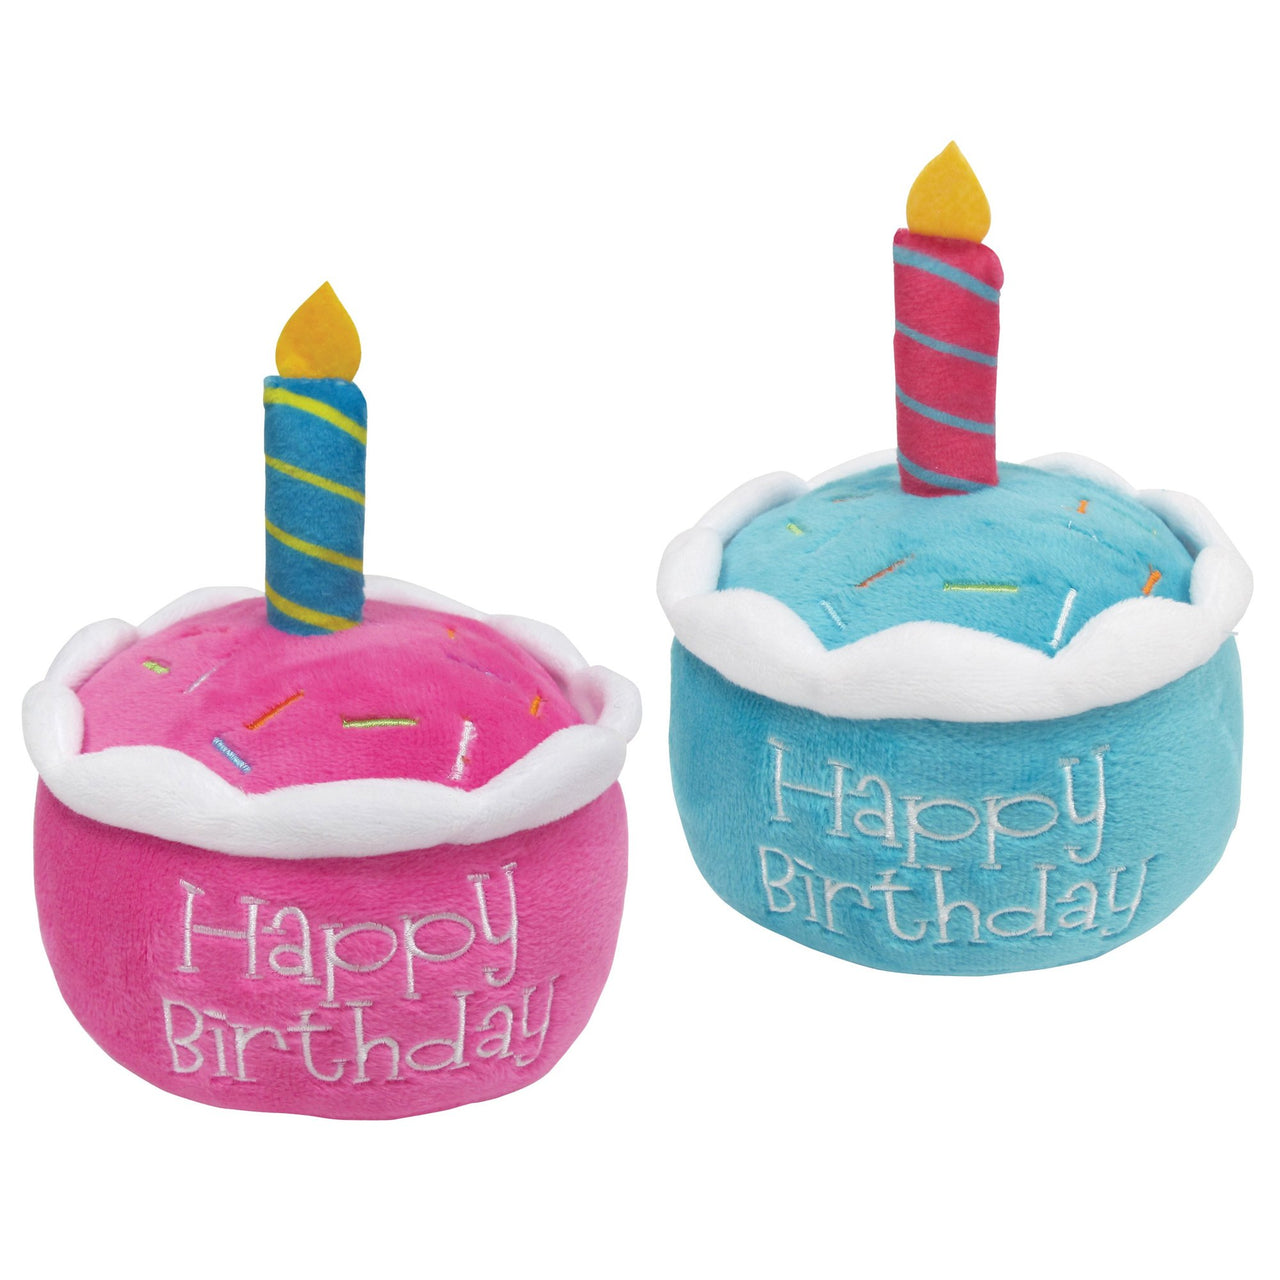 FouFou Birthday Cake Plush Toy